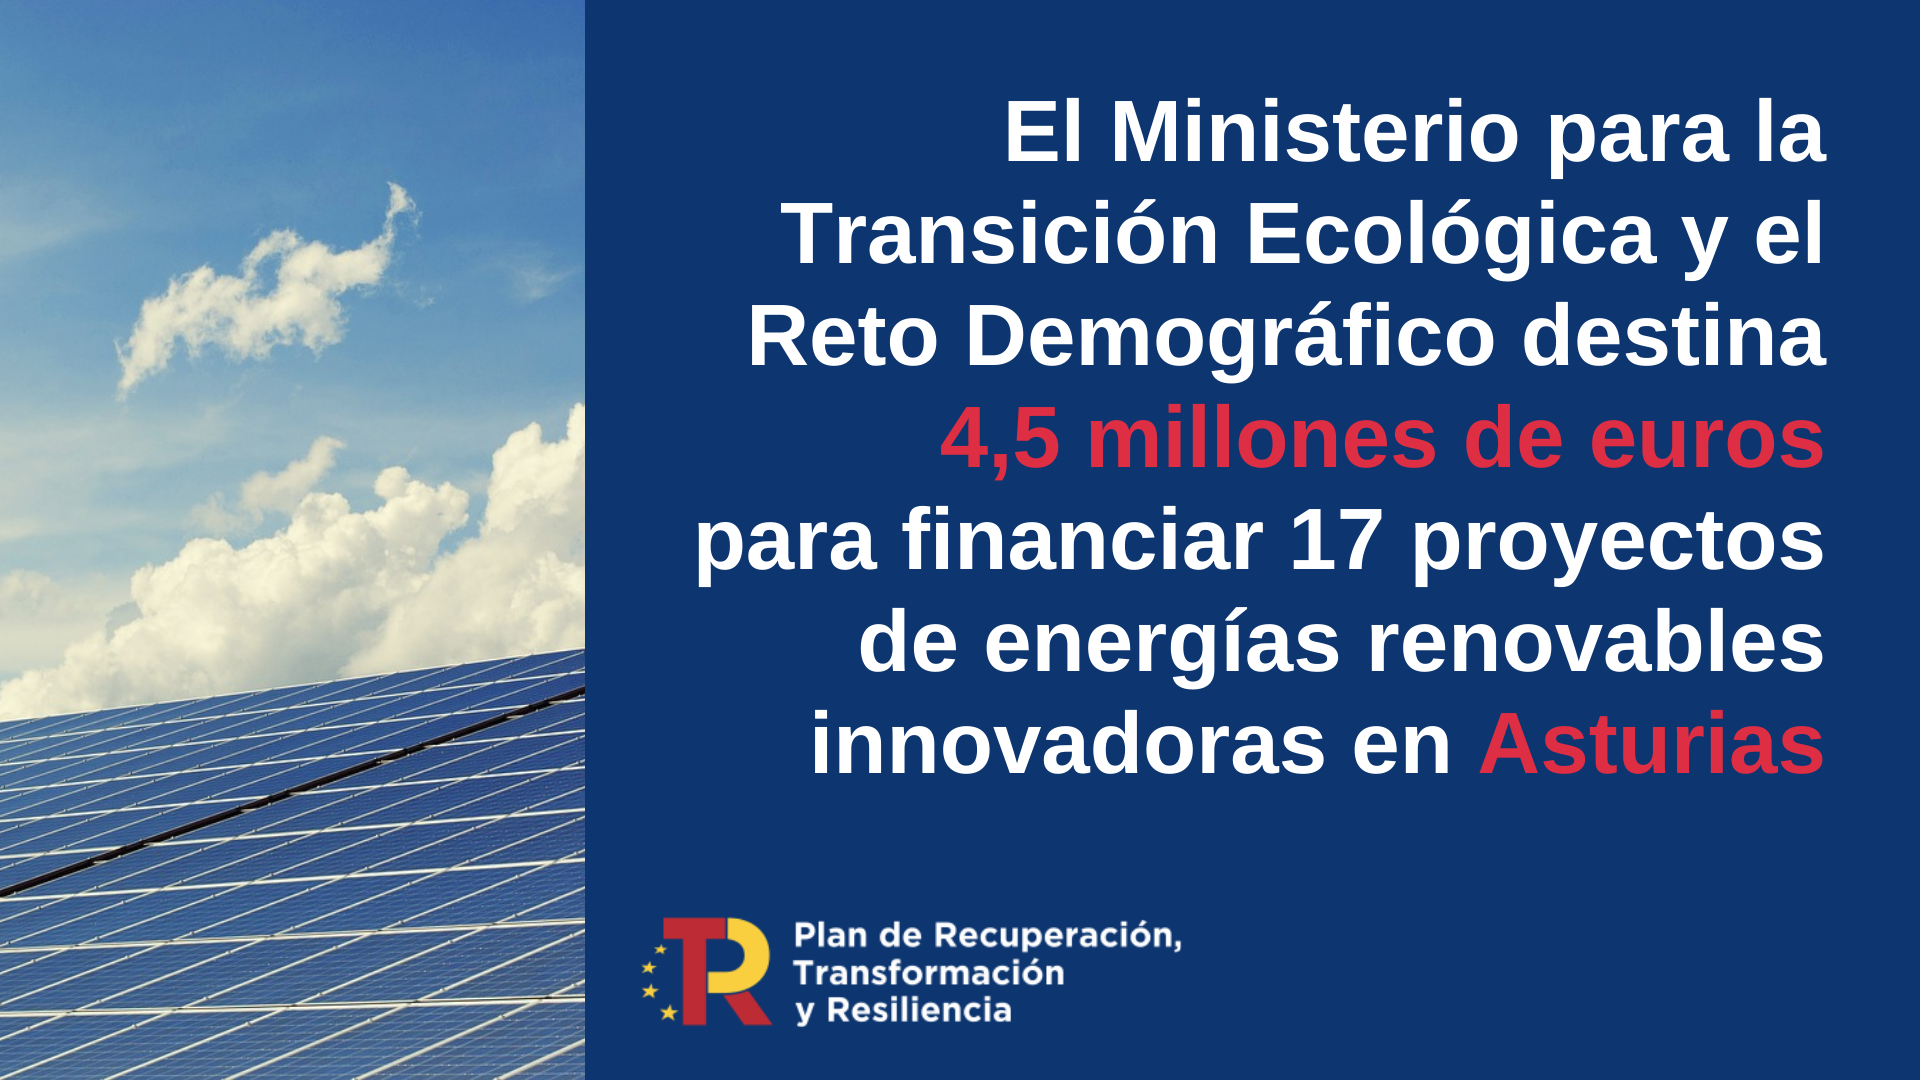 El MITECO destina 4,5 millones de euros para impulsar 17 proyectos de energías renovables innovadoras en Asturias